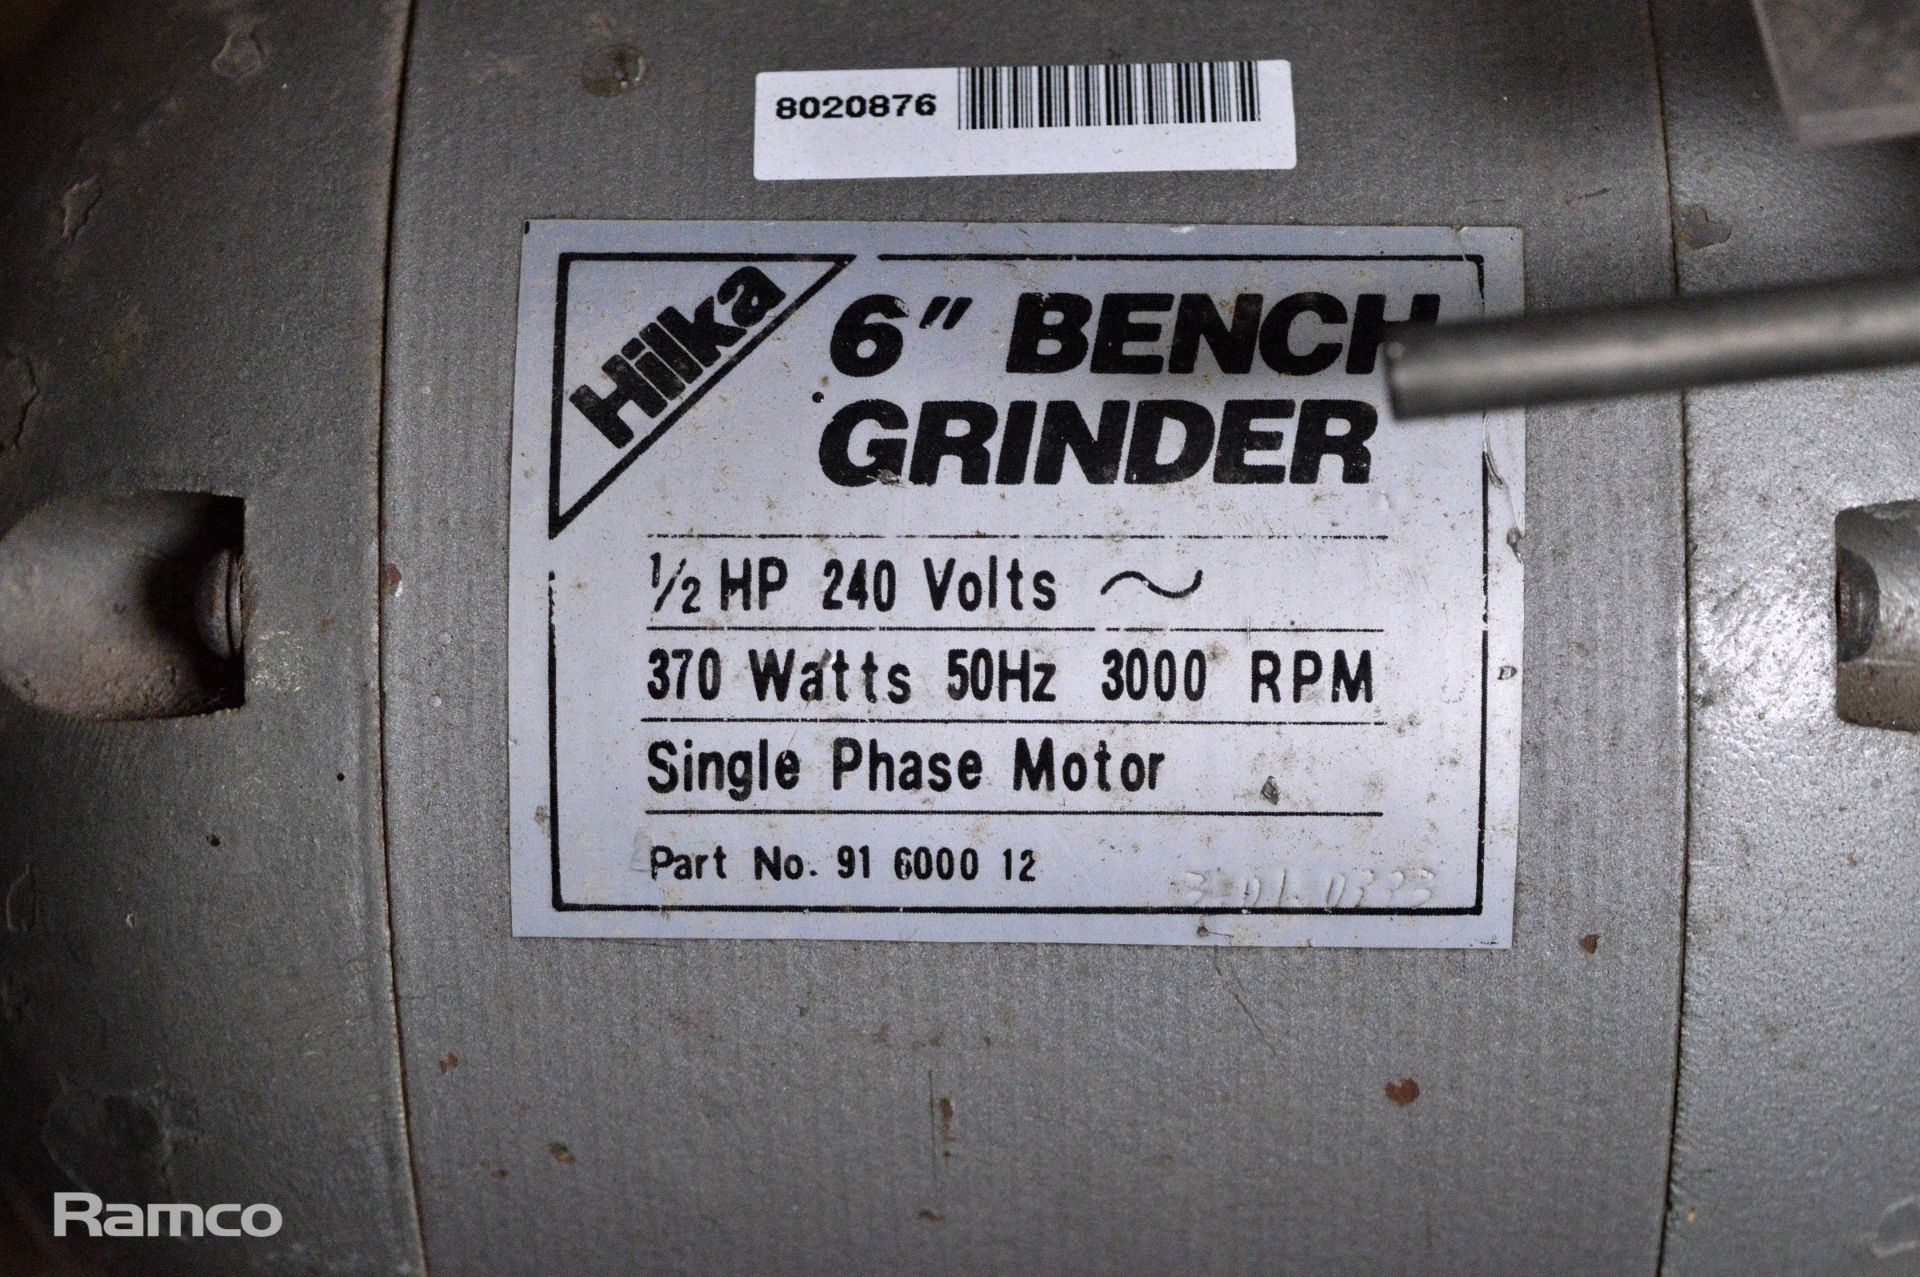 Hilka 6 inch electric bench grinder 240v - Image 5 of 5